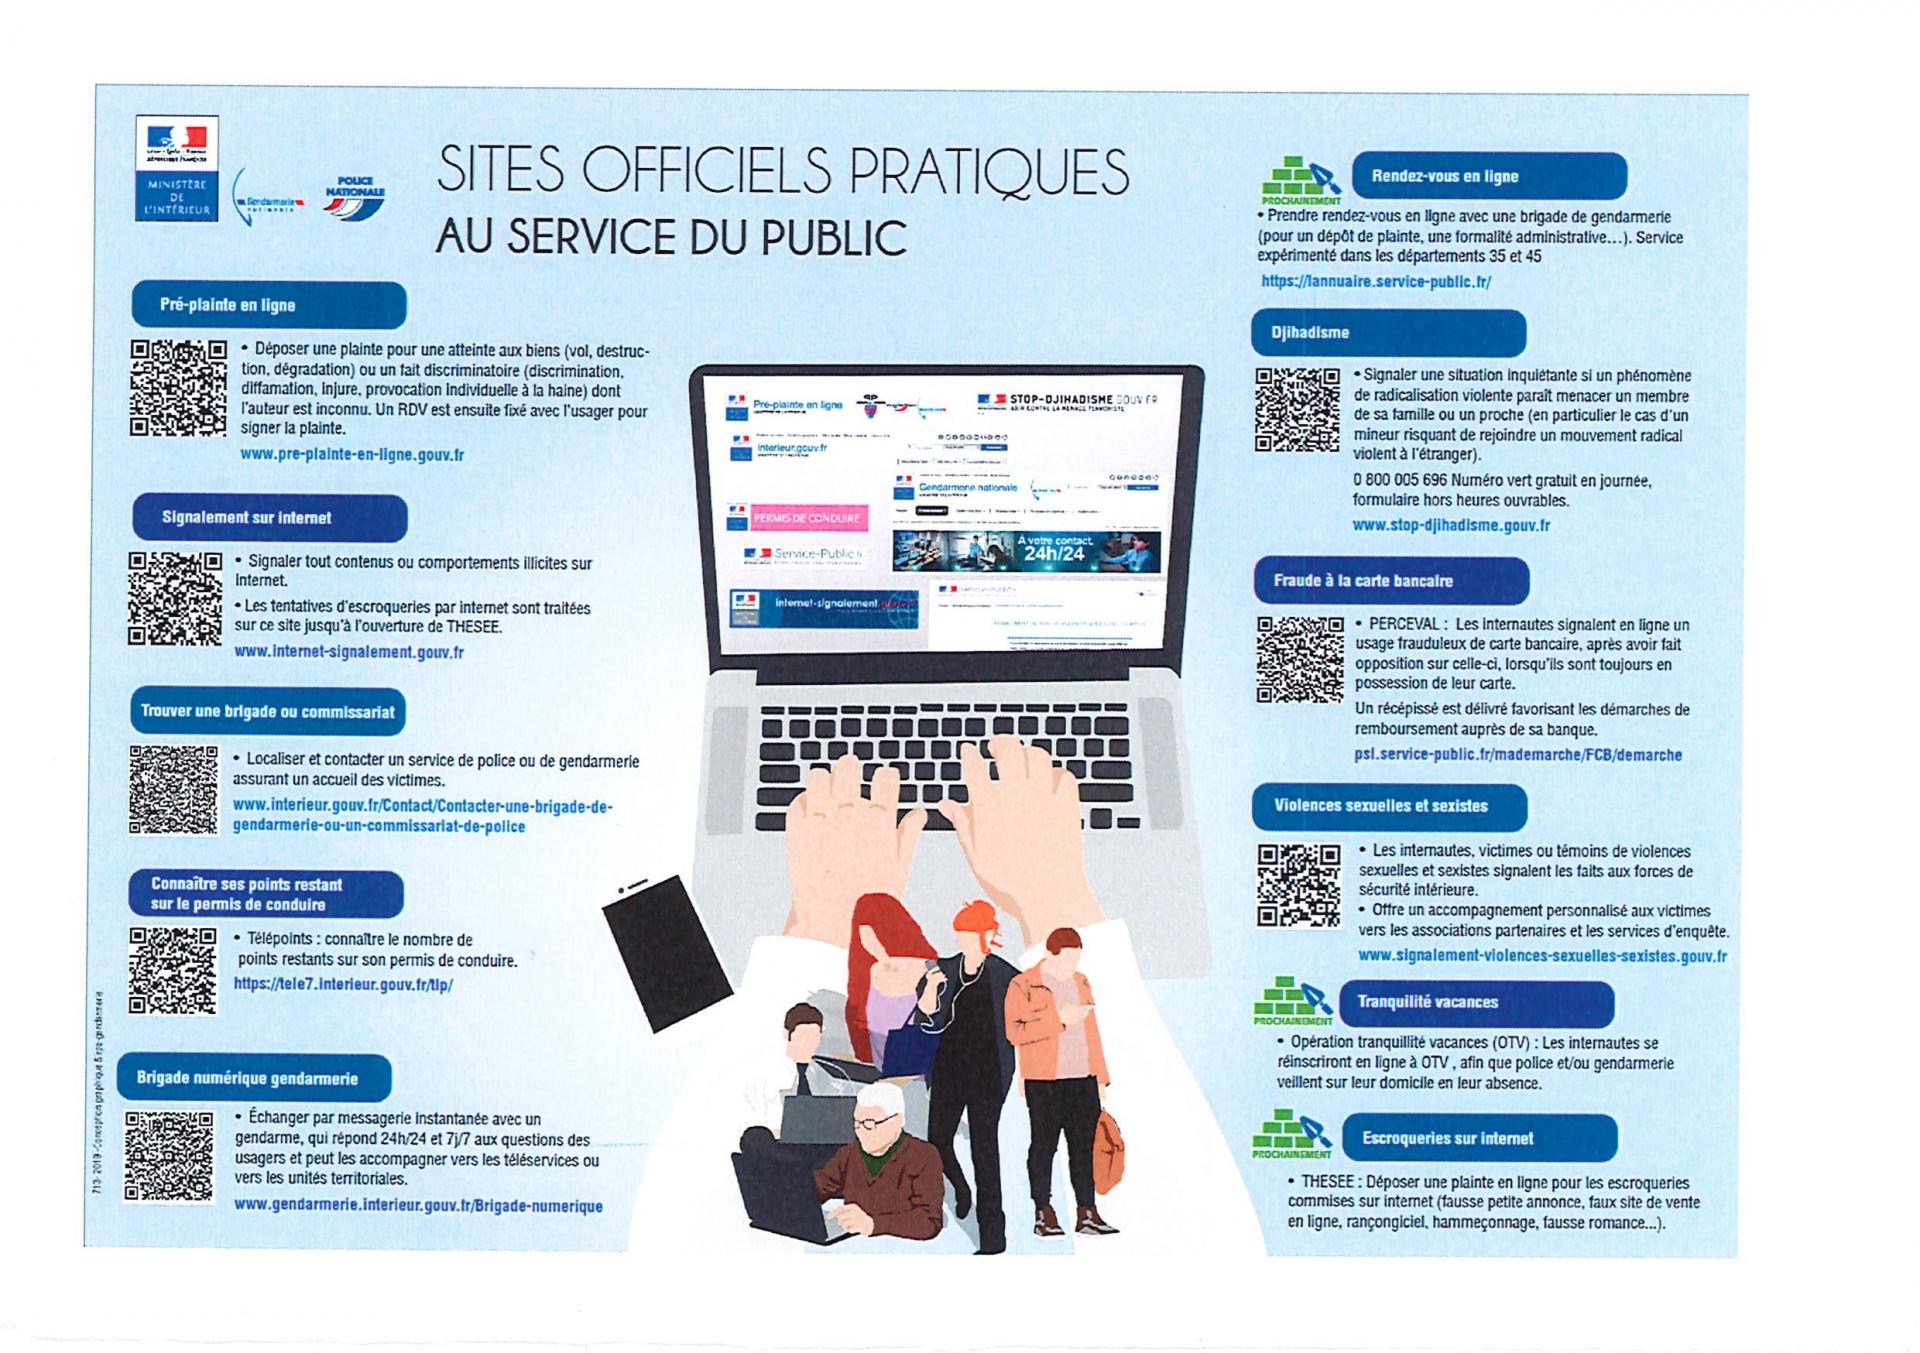 Sites officiels pratiques au service public